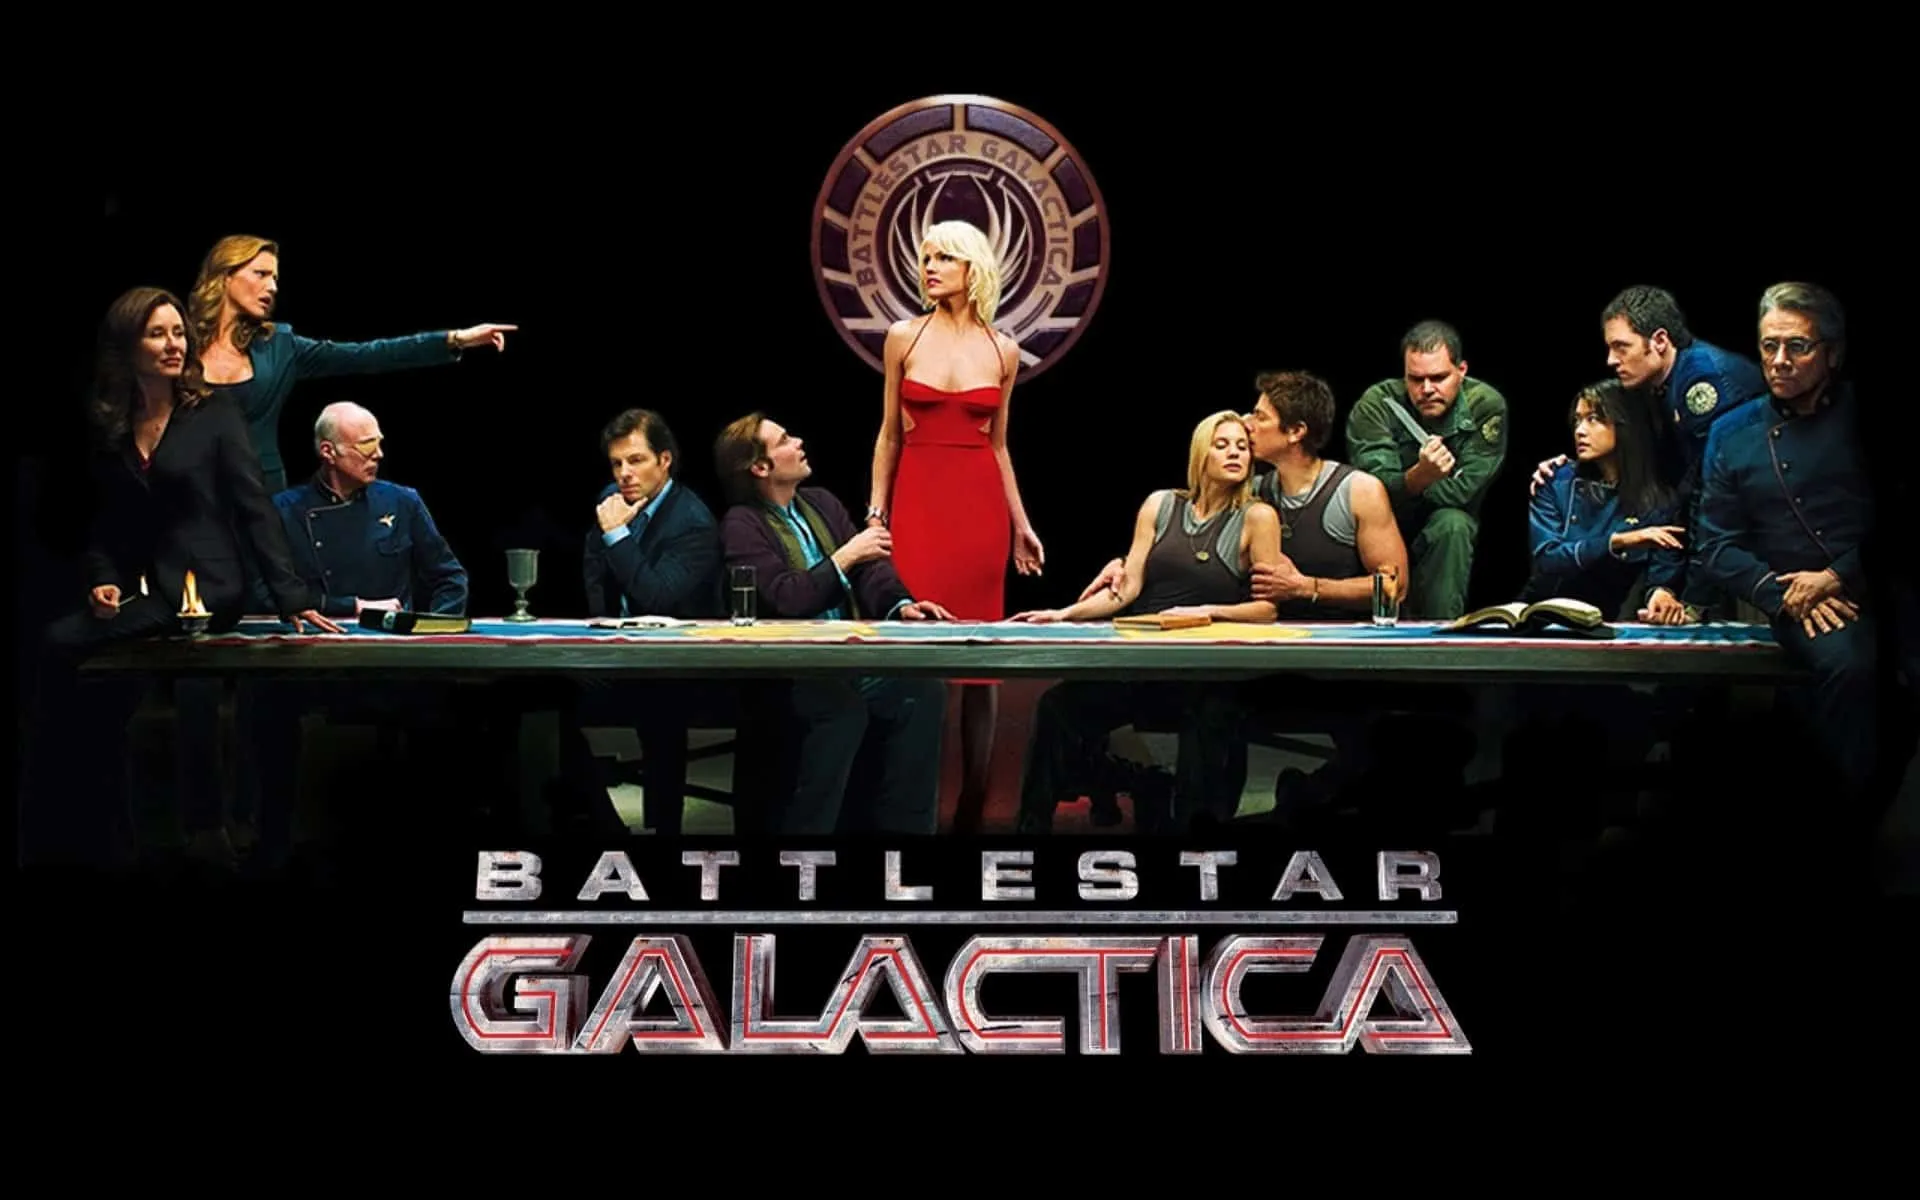 Battlestar Galactica: Саймон Кинберг обещает, что фильм о перезагрузке выпустят в 2022